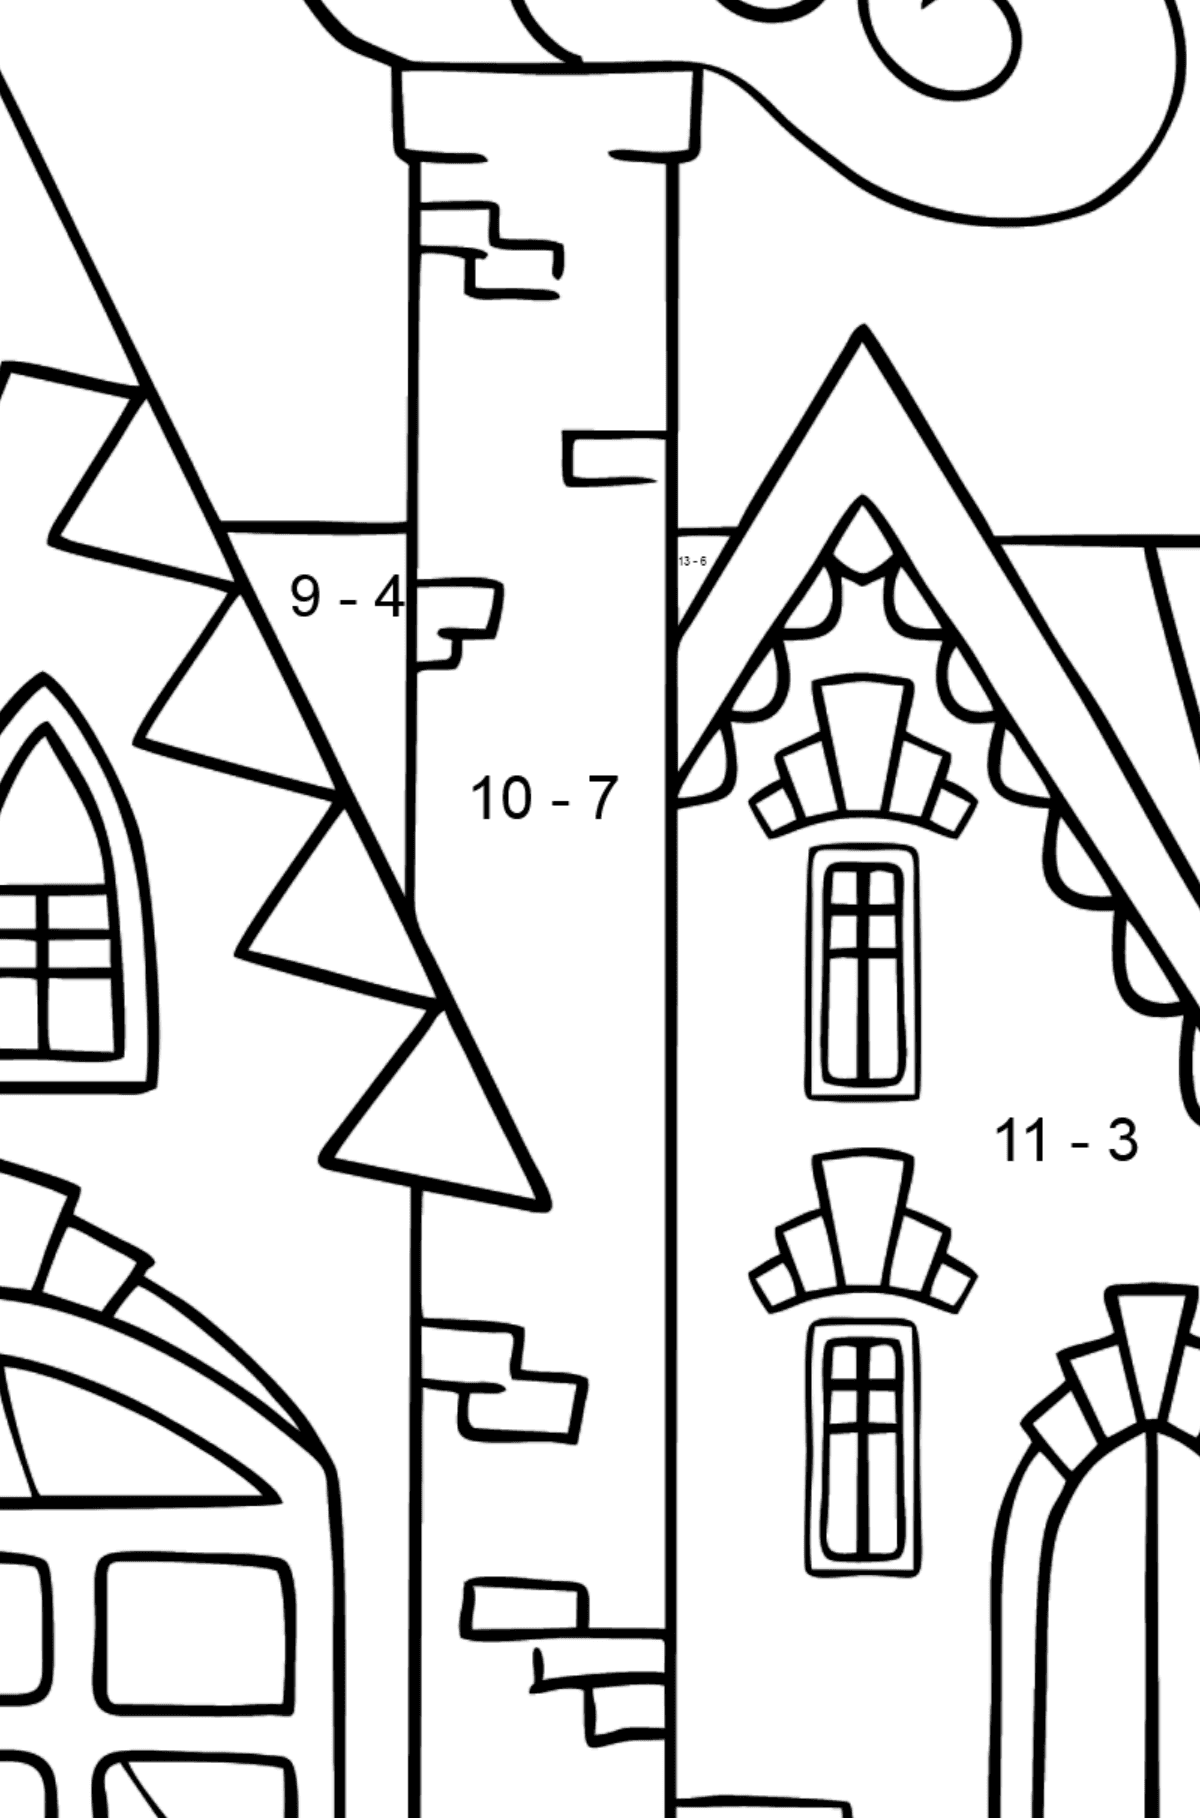 Einfache Ausmalbild - Ein bezauberndes Haus - Mathe Ausmalbilder - Subtraktion für Kinder